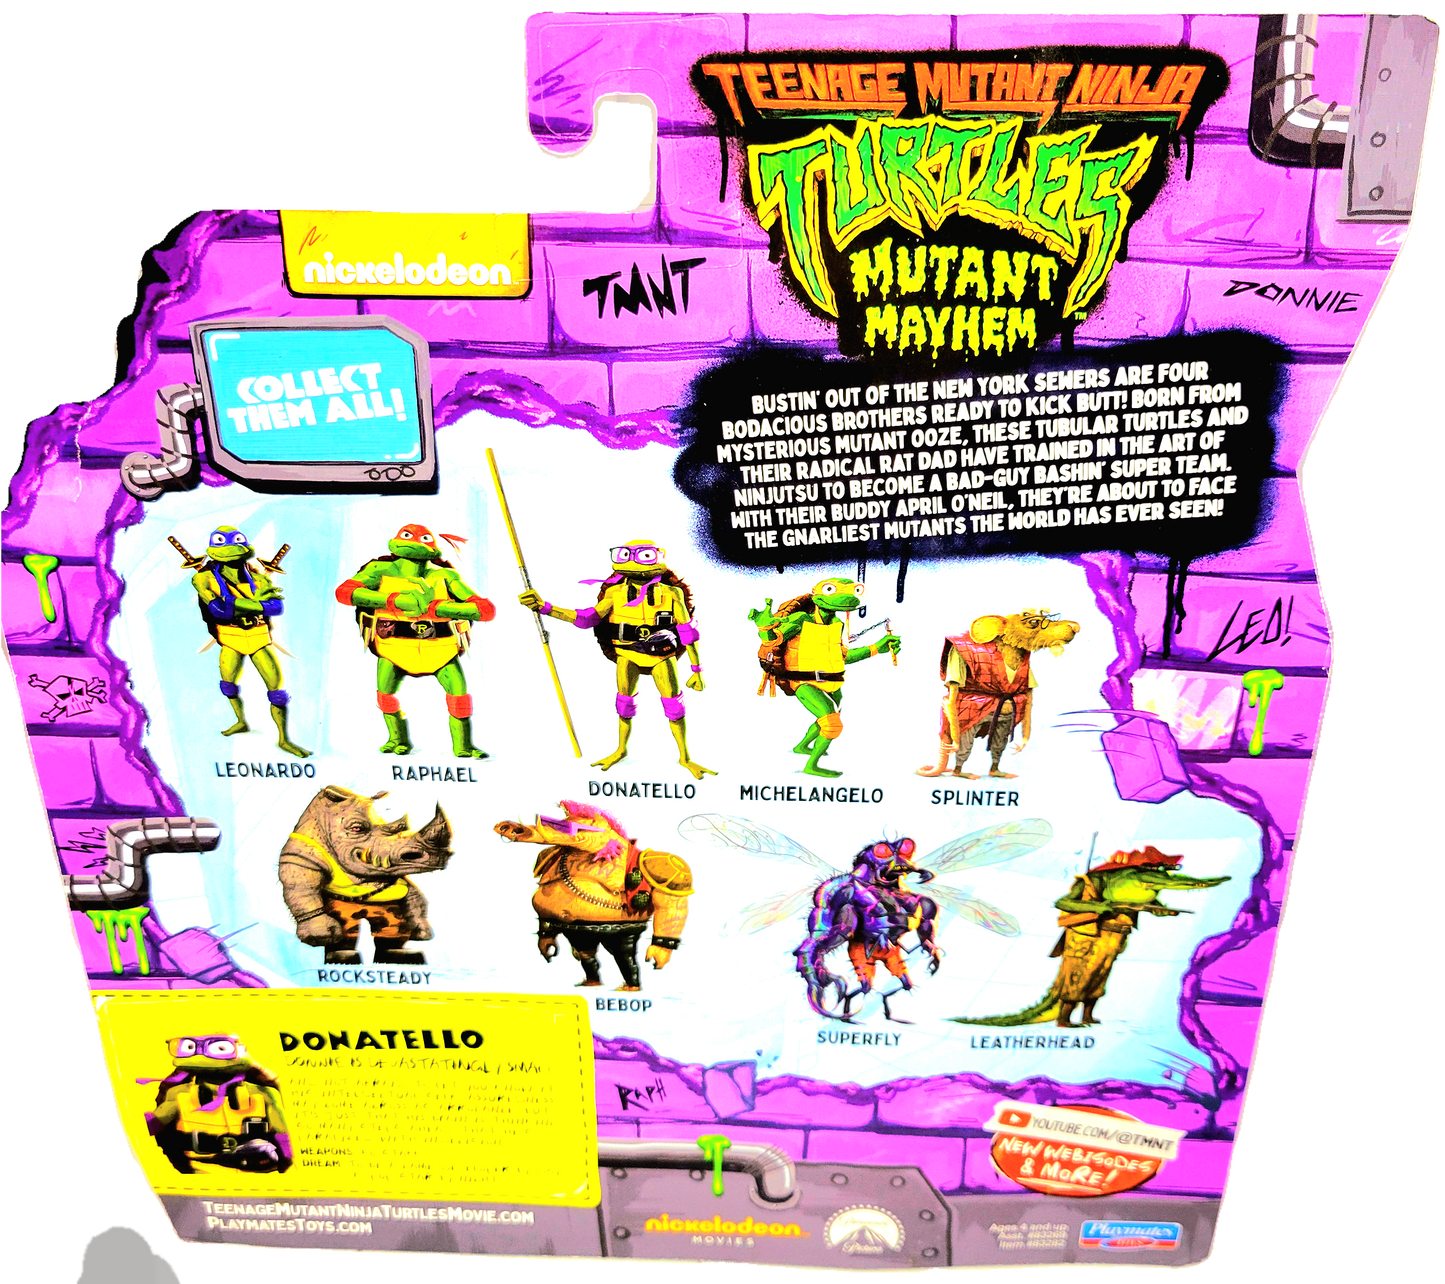 Playmates Teenage Mutant Ninja Turtles Mutant Mayhem Donatello Action Figure